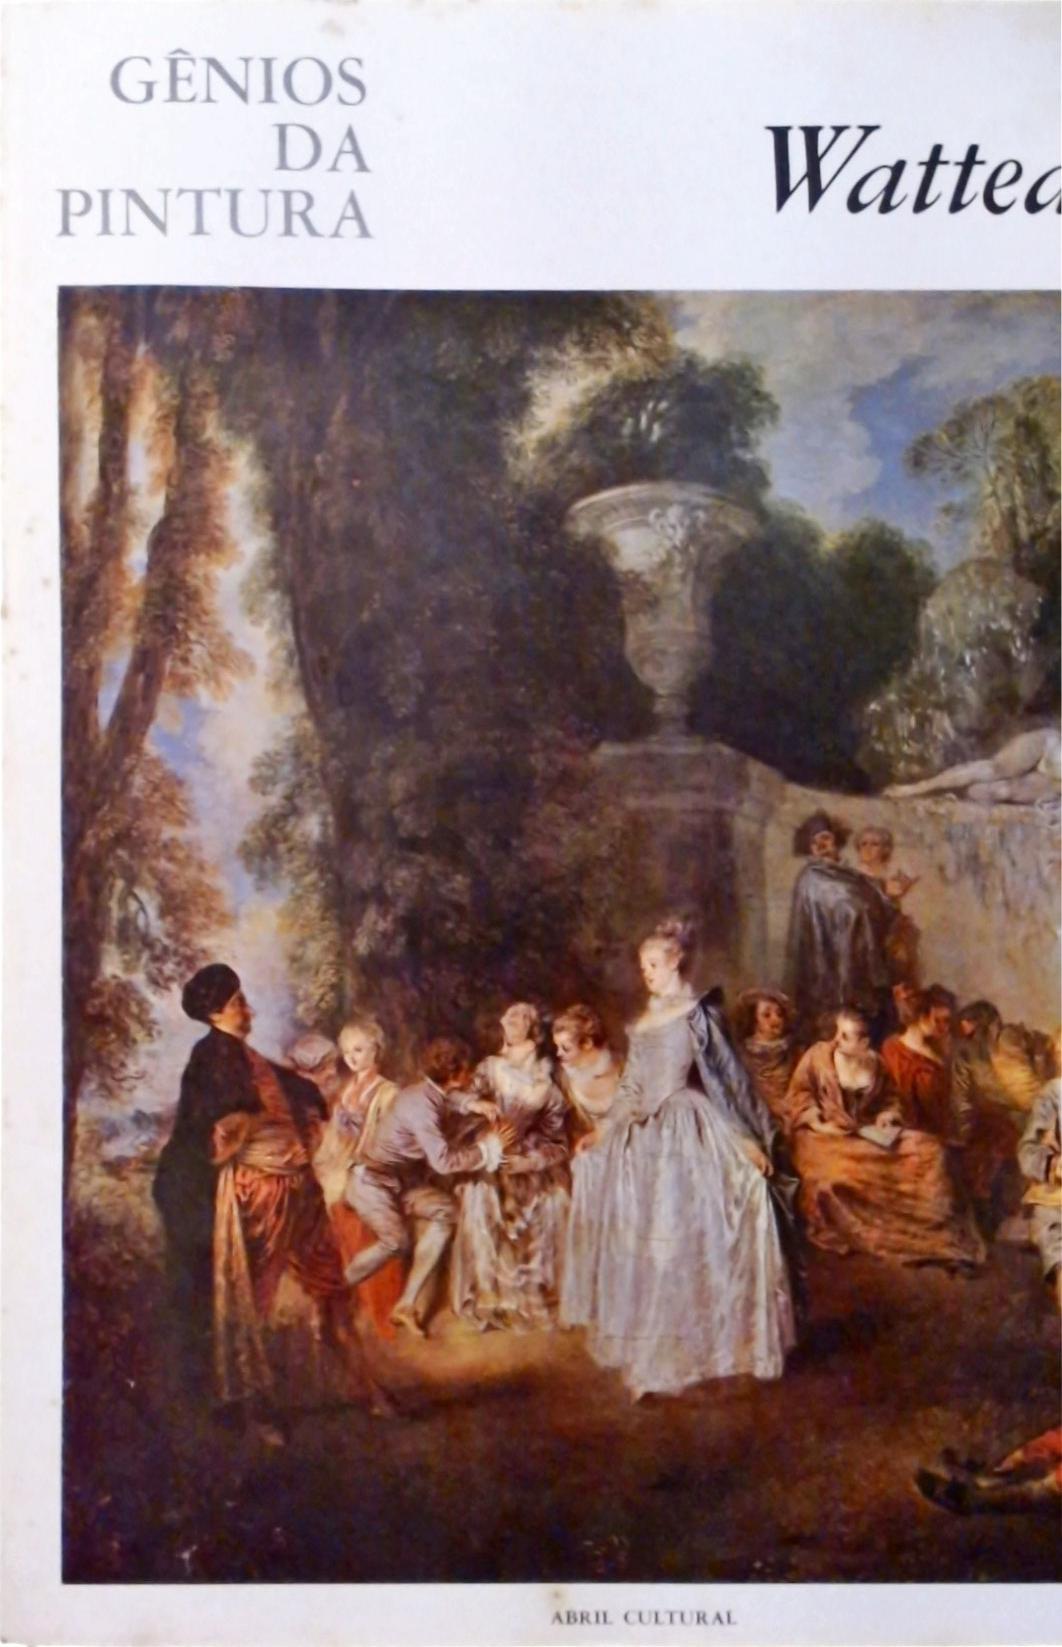 Gênios da Pintura - Watteau